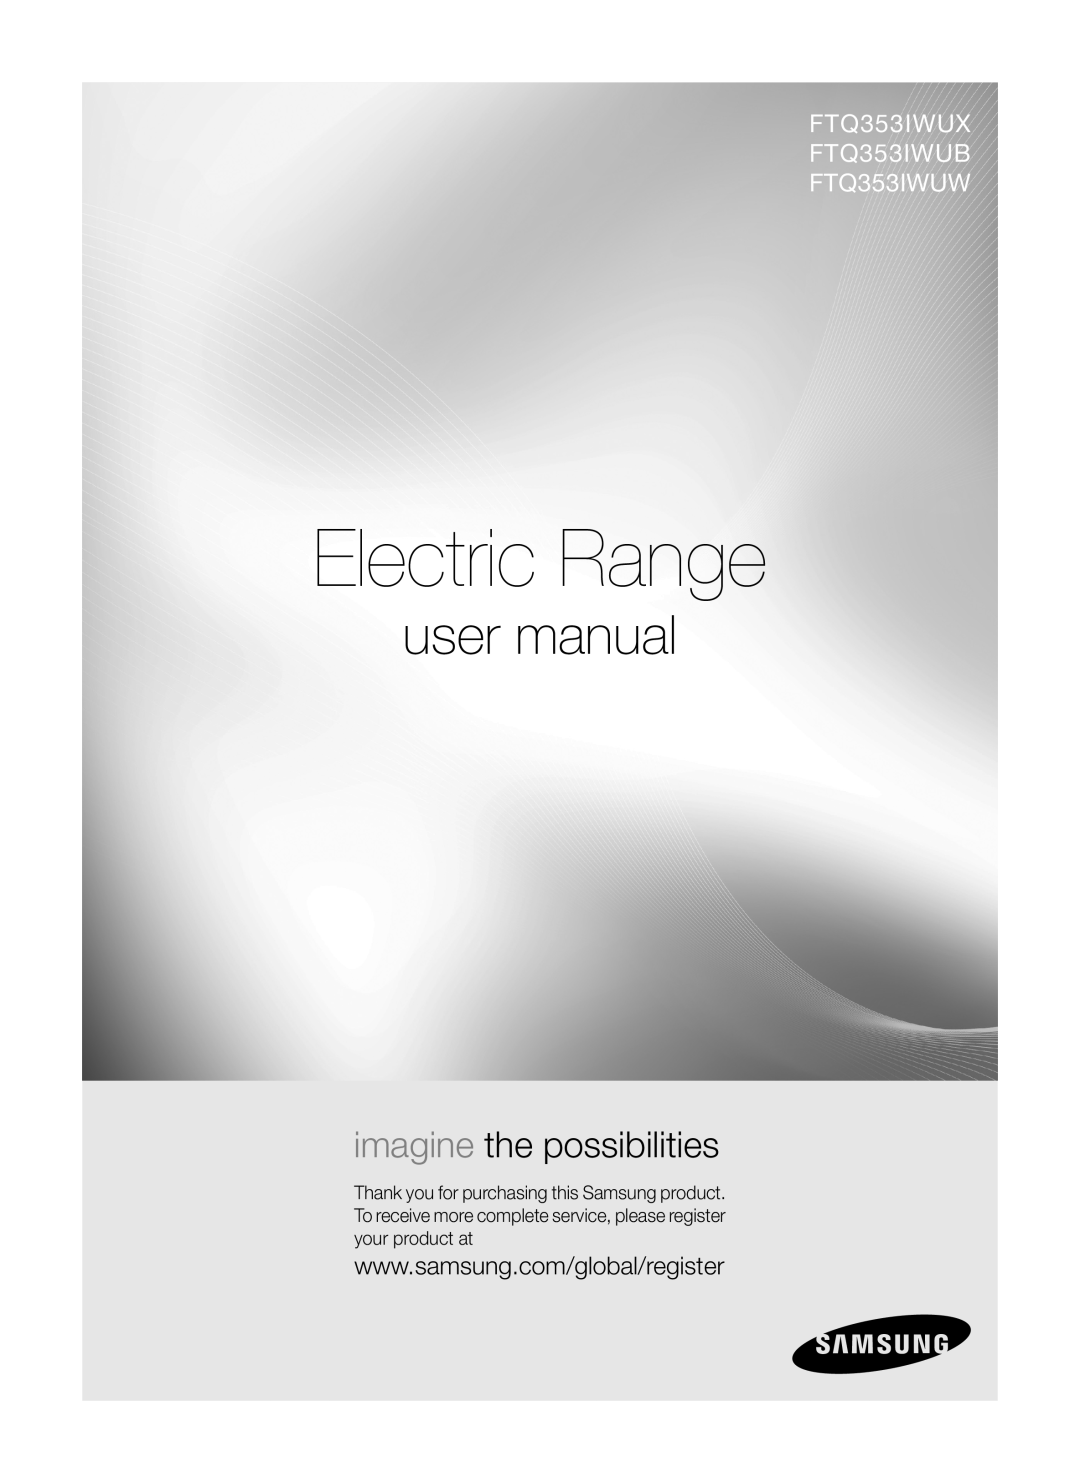 Samsung user manual Electric Range, imagine the possibilities, FTQ353IWUX FTQ353IWUB FTQ353IWUW 